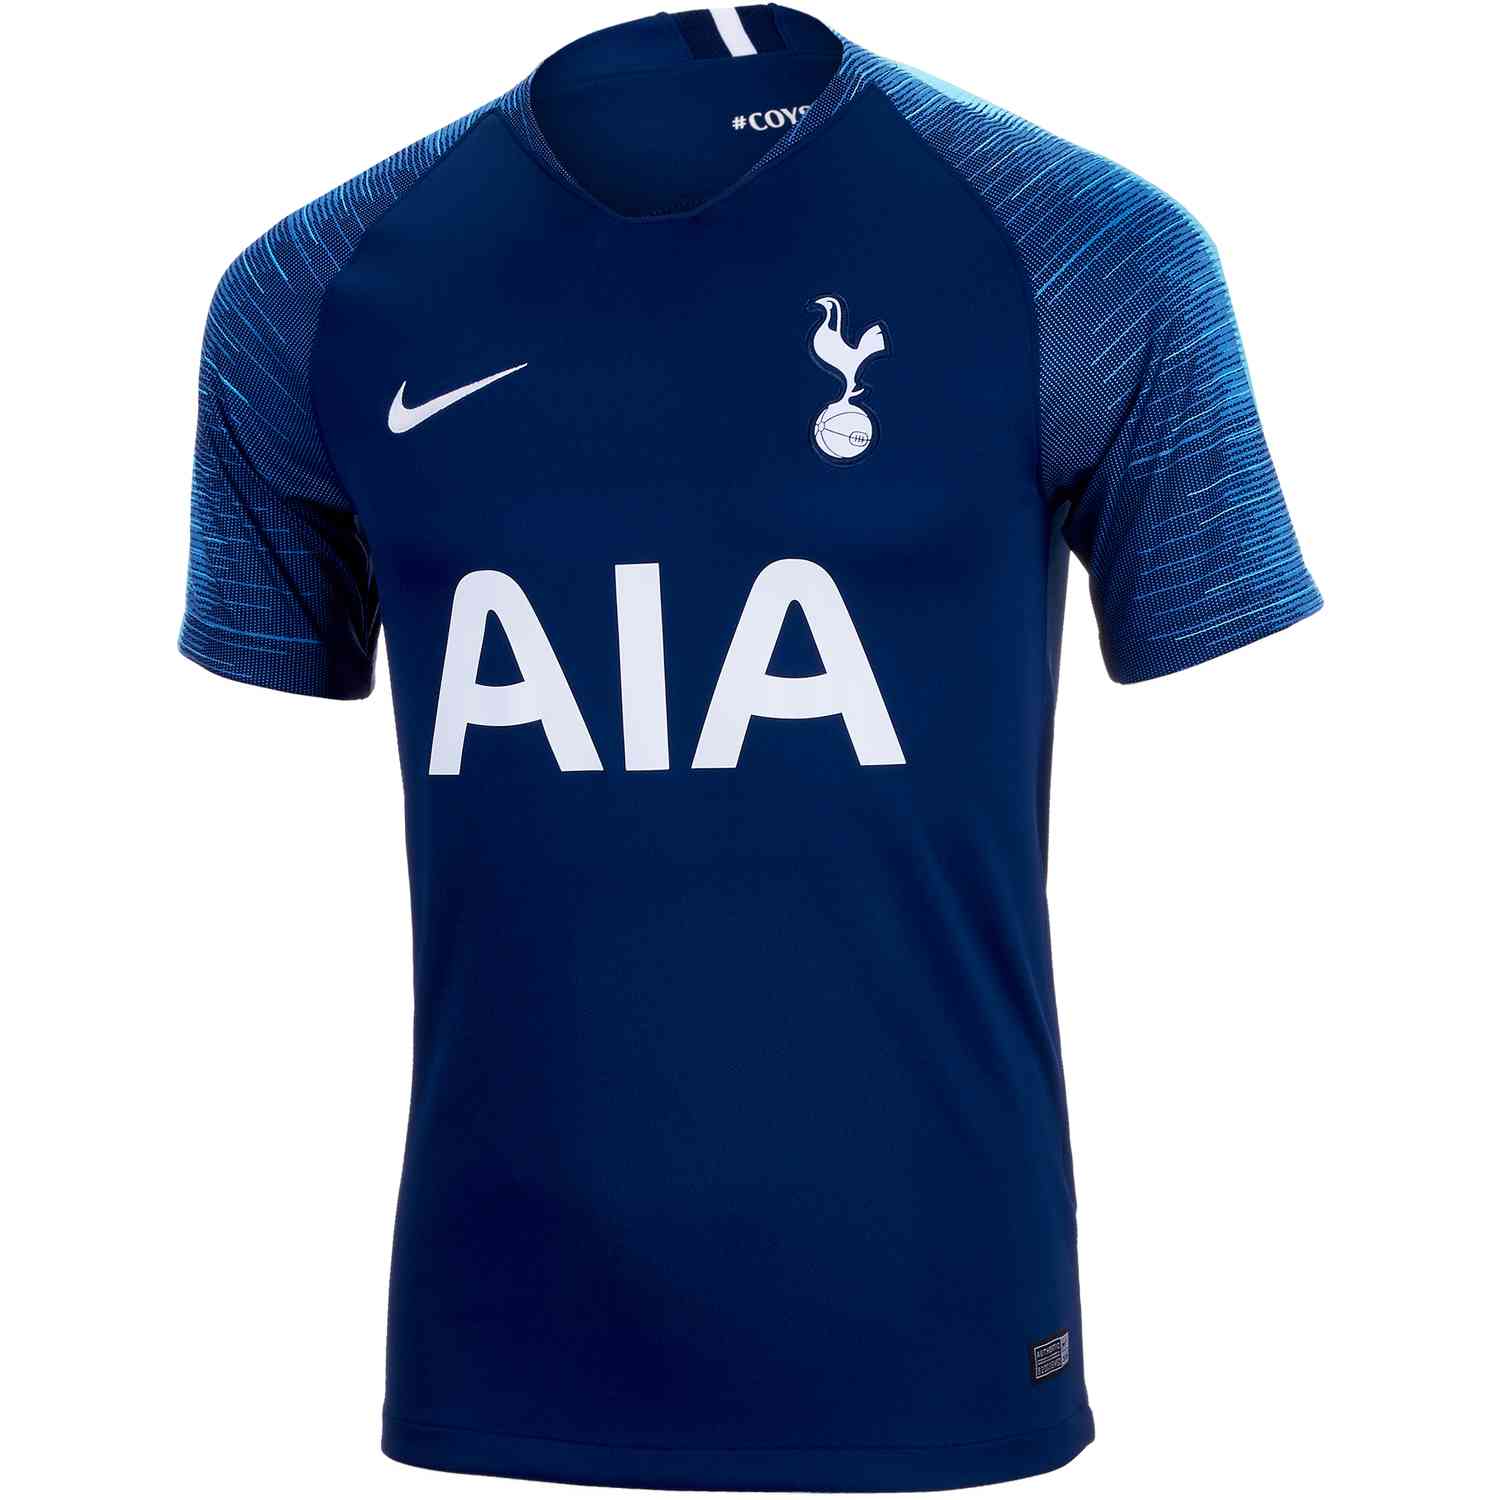 Tottenham Hotspur Goalkeeper Shirt,Tottenham Hotspur Jersey 2014,18/19 goalkeeper  Tottenham Hotspur jersey